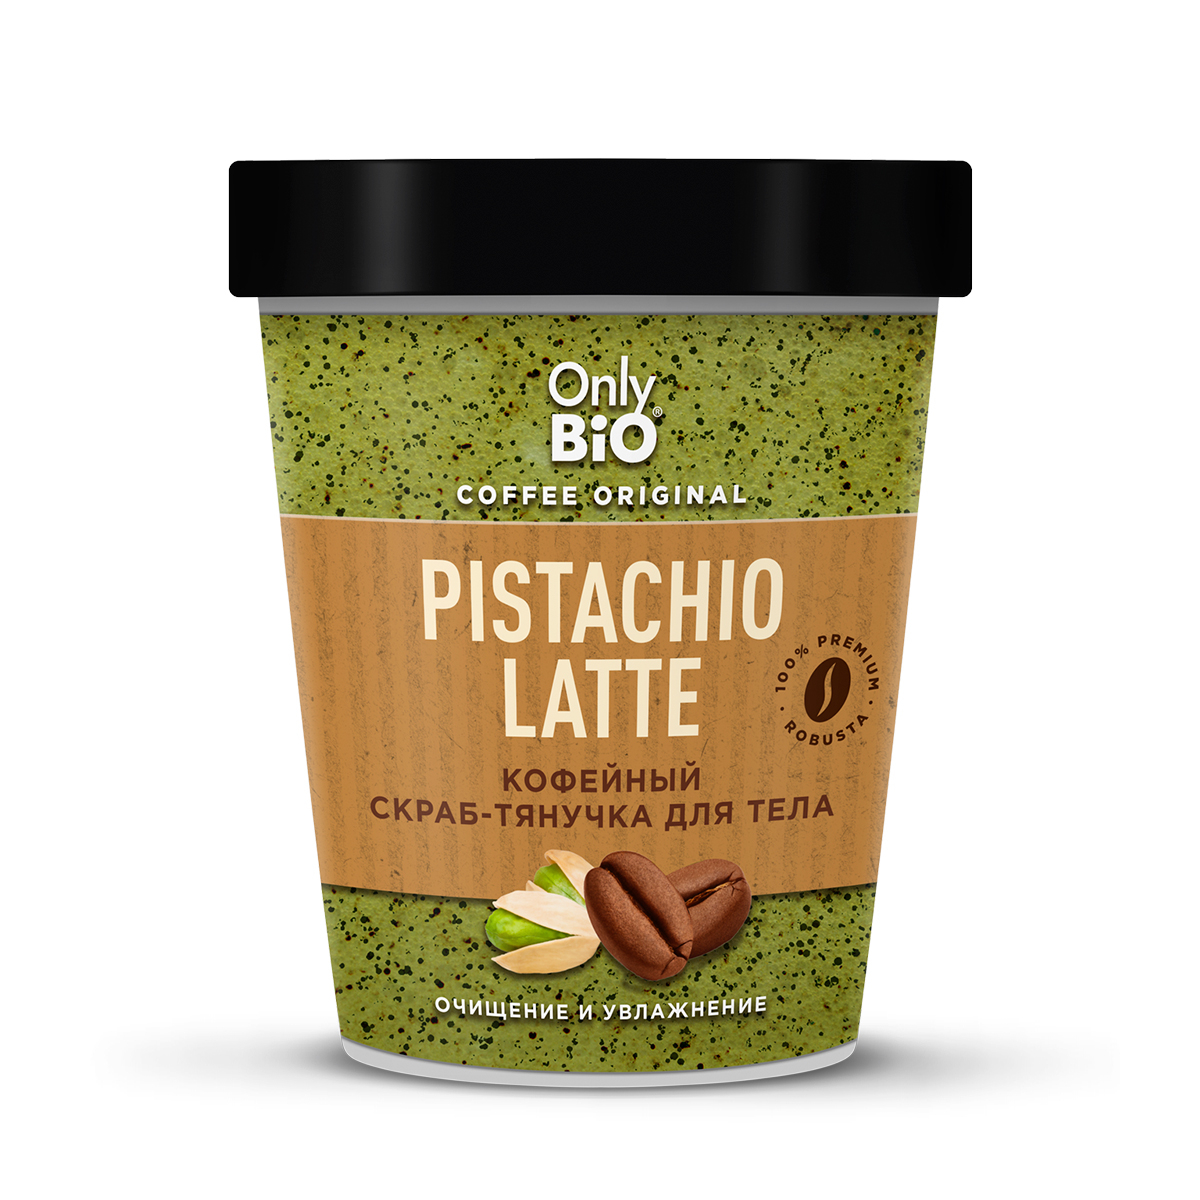 Скраб-тянучка для тела Only Bio Coffee Original Pistachio Latte кофейный, 230 мл скраб тянучка для тела kopusha пердыня 2 шт х 250 г